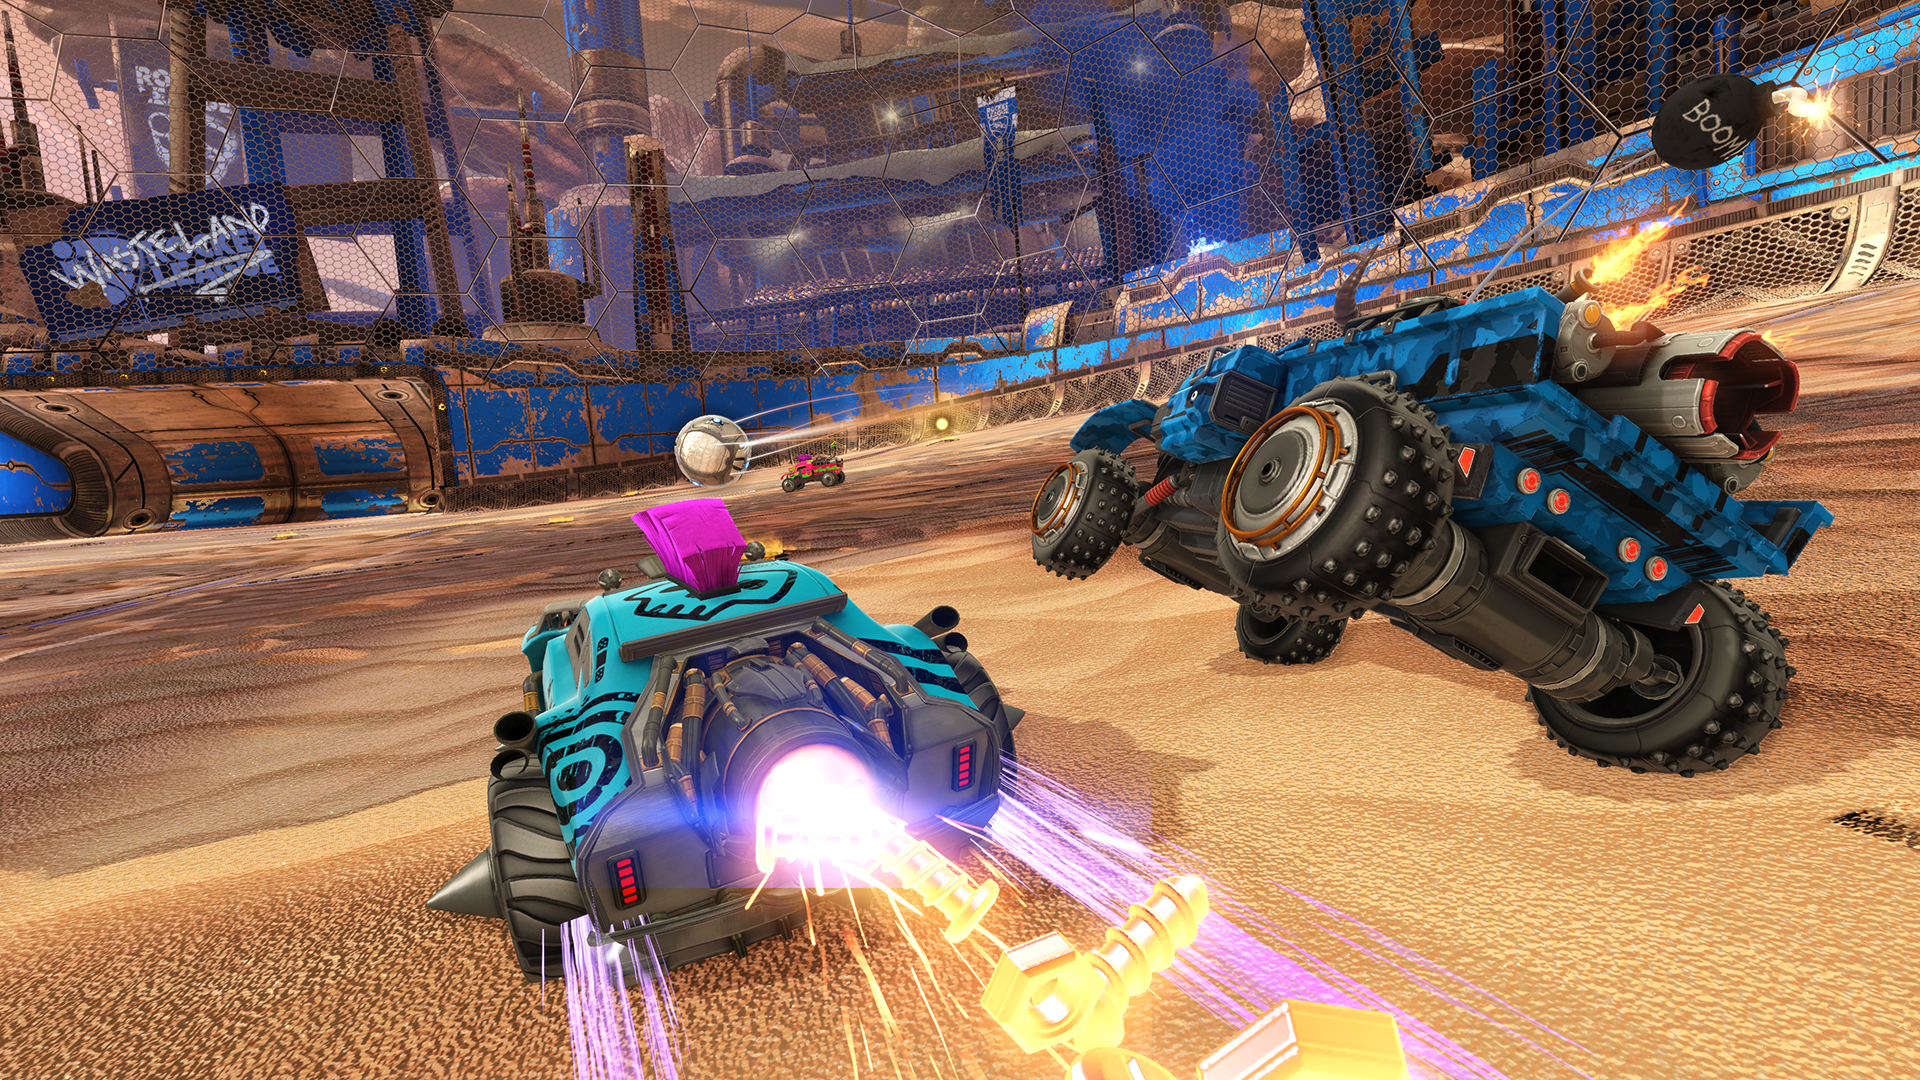 Rocket League - Chaos Run DLC Pack screenshot